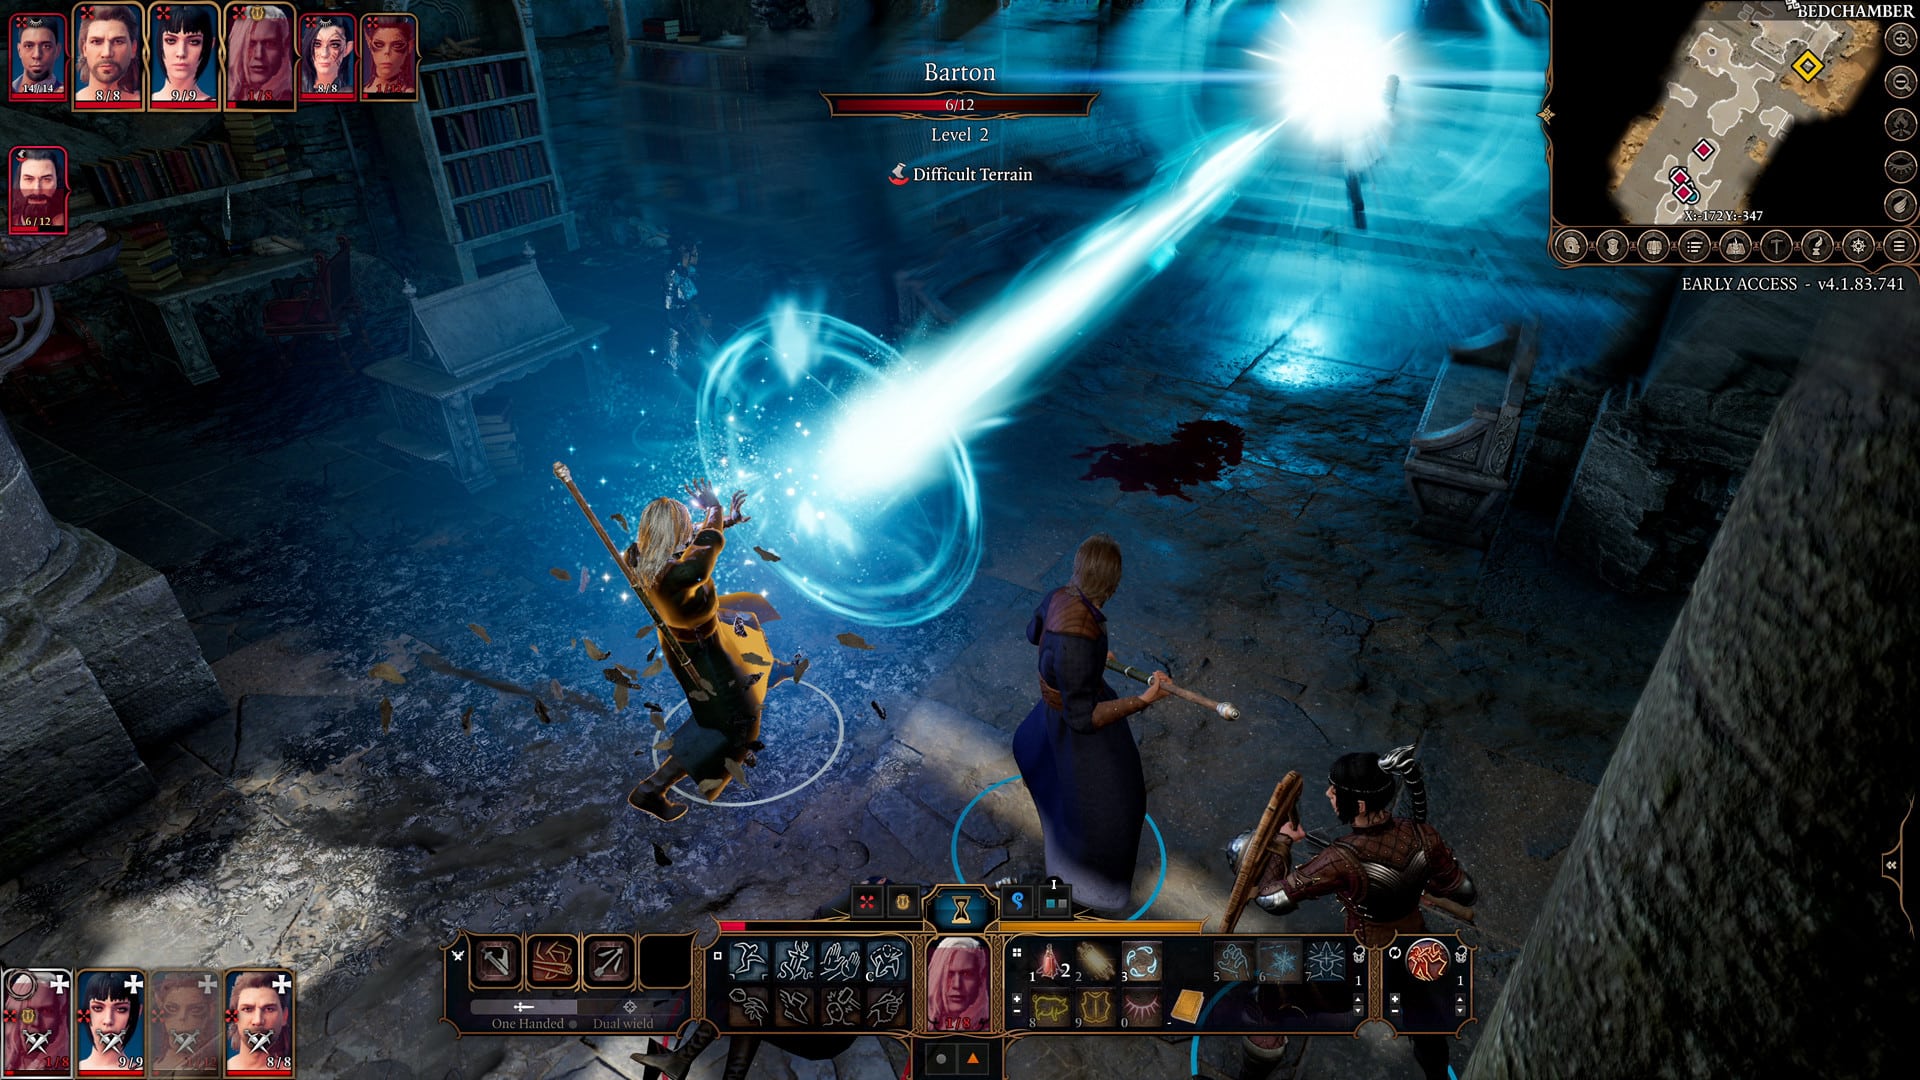 Capture d'écran de Baldur's Gate 3 montrant une ancienne attaque magique des arcanes